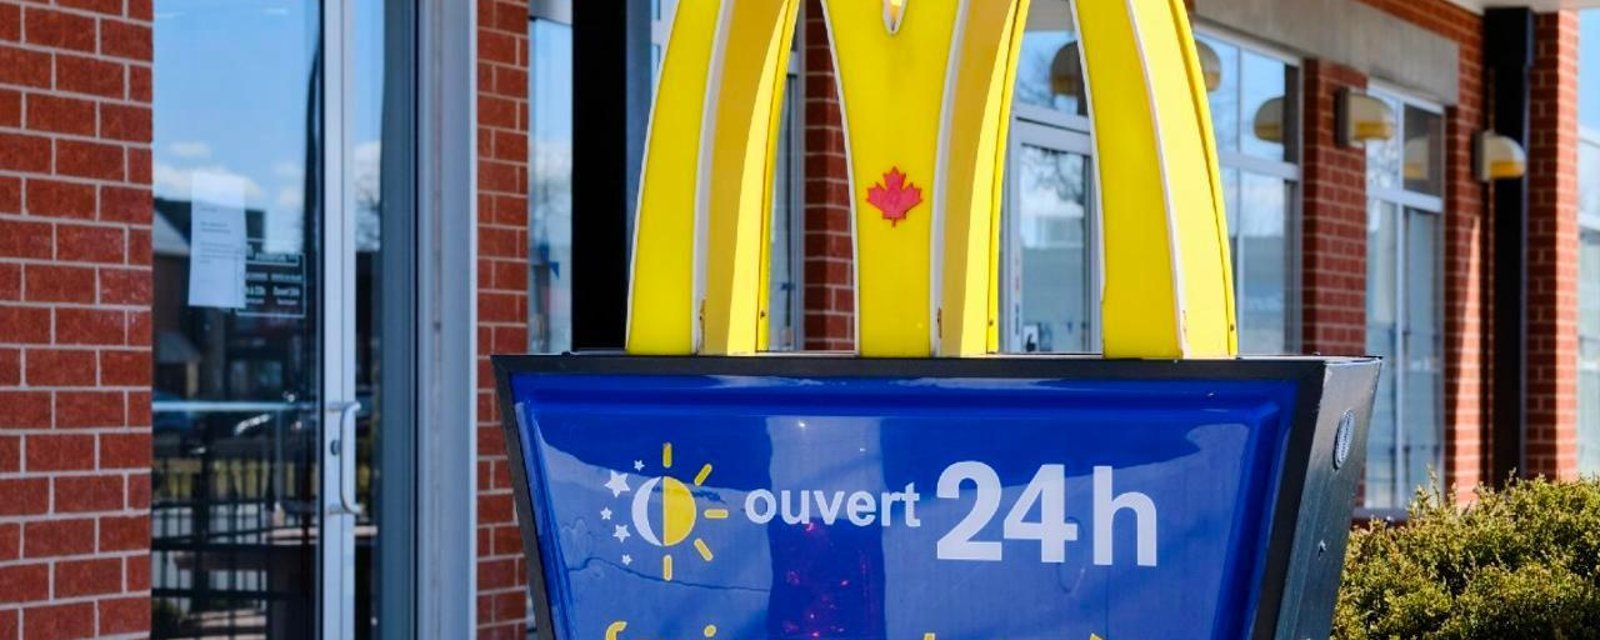 Cette nouveauté chez McDonald's va faire saliver de nombreux Québécois